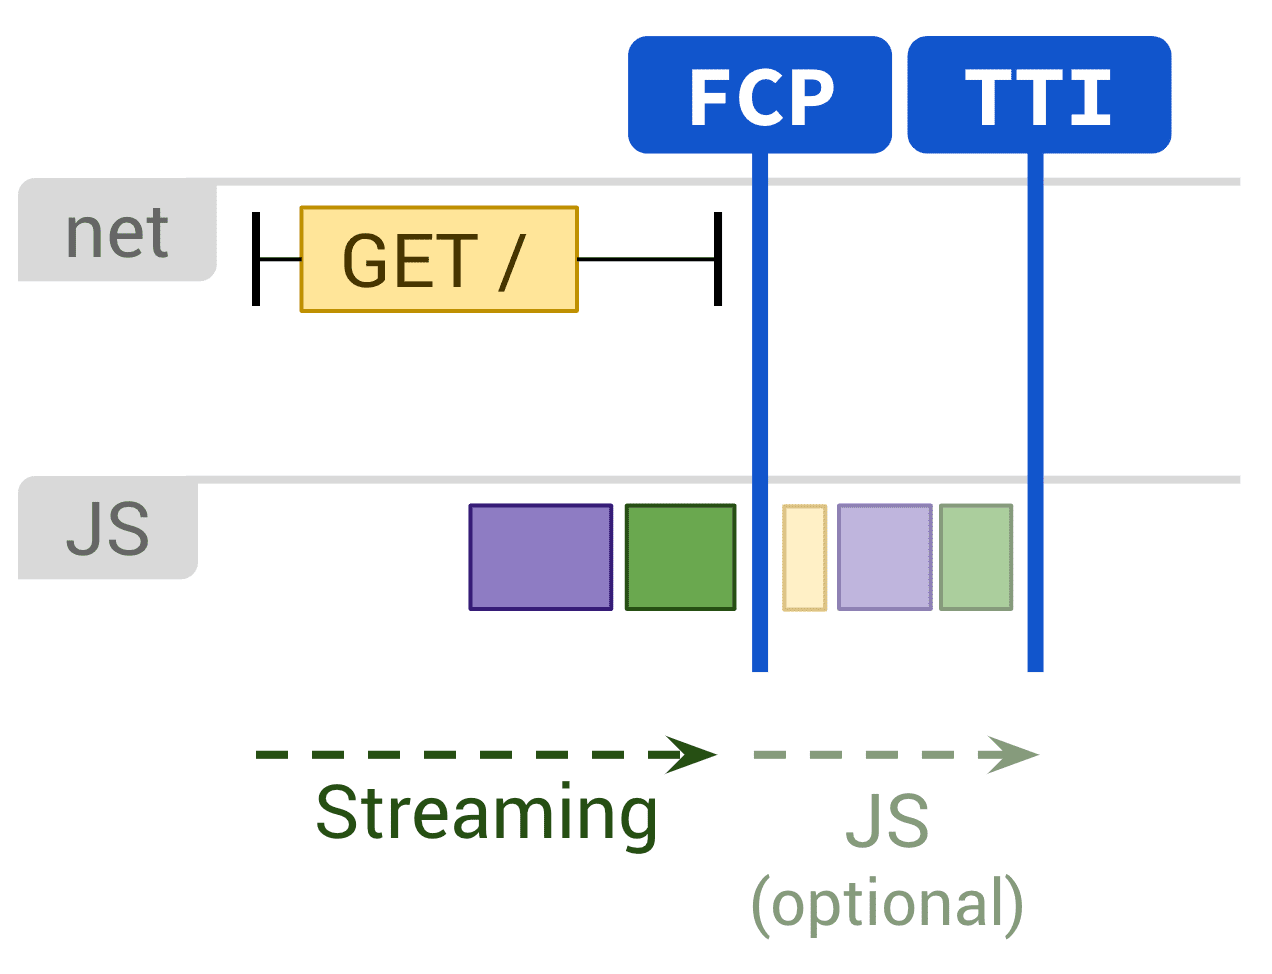 Diagrama en el que se muestra el procesamiento estático y la ejecución opcional de JS que afectan a FCP y TTI.